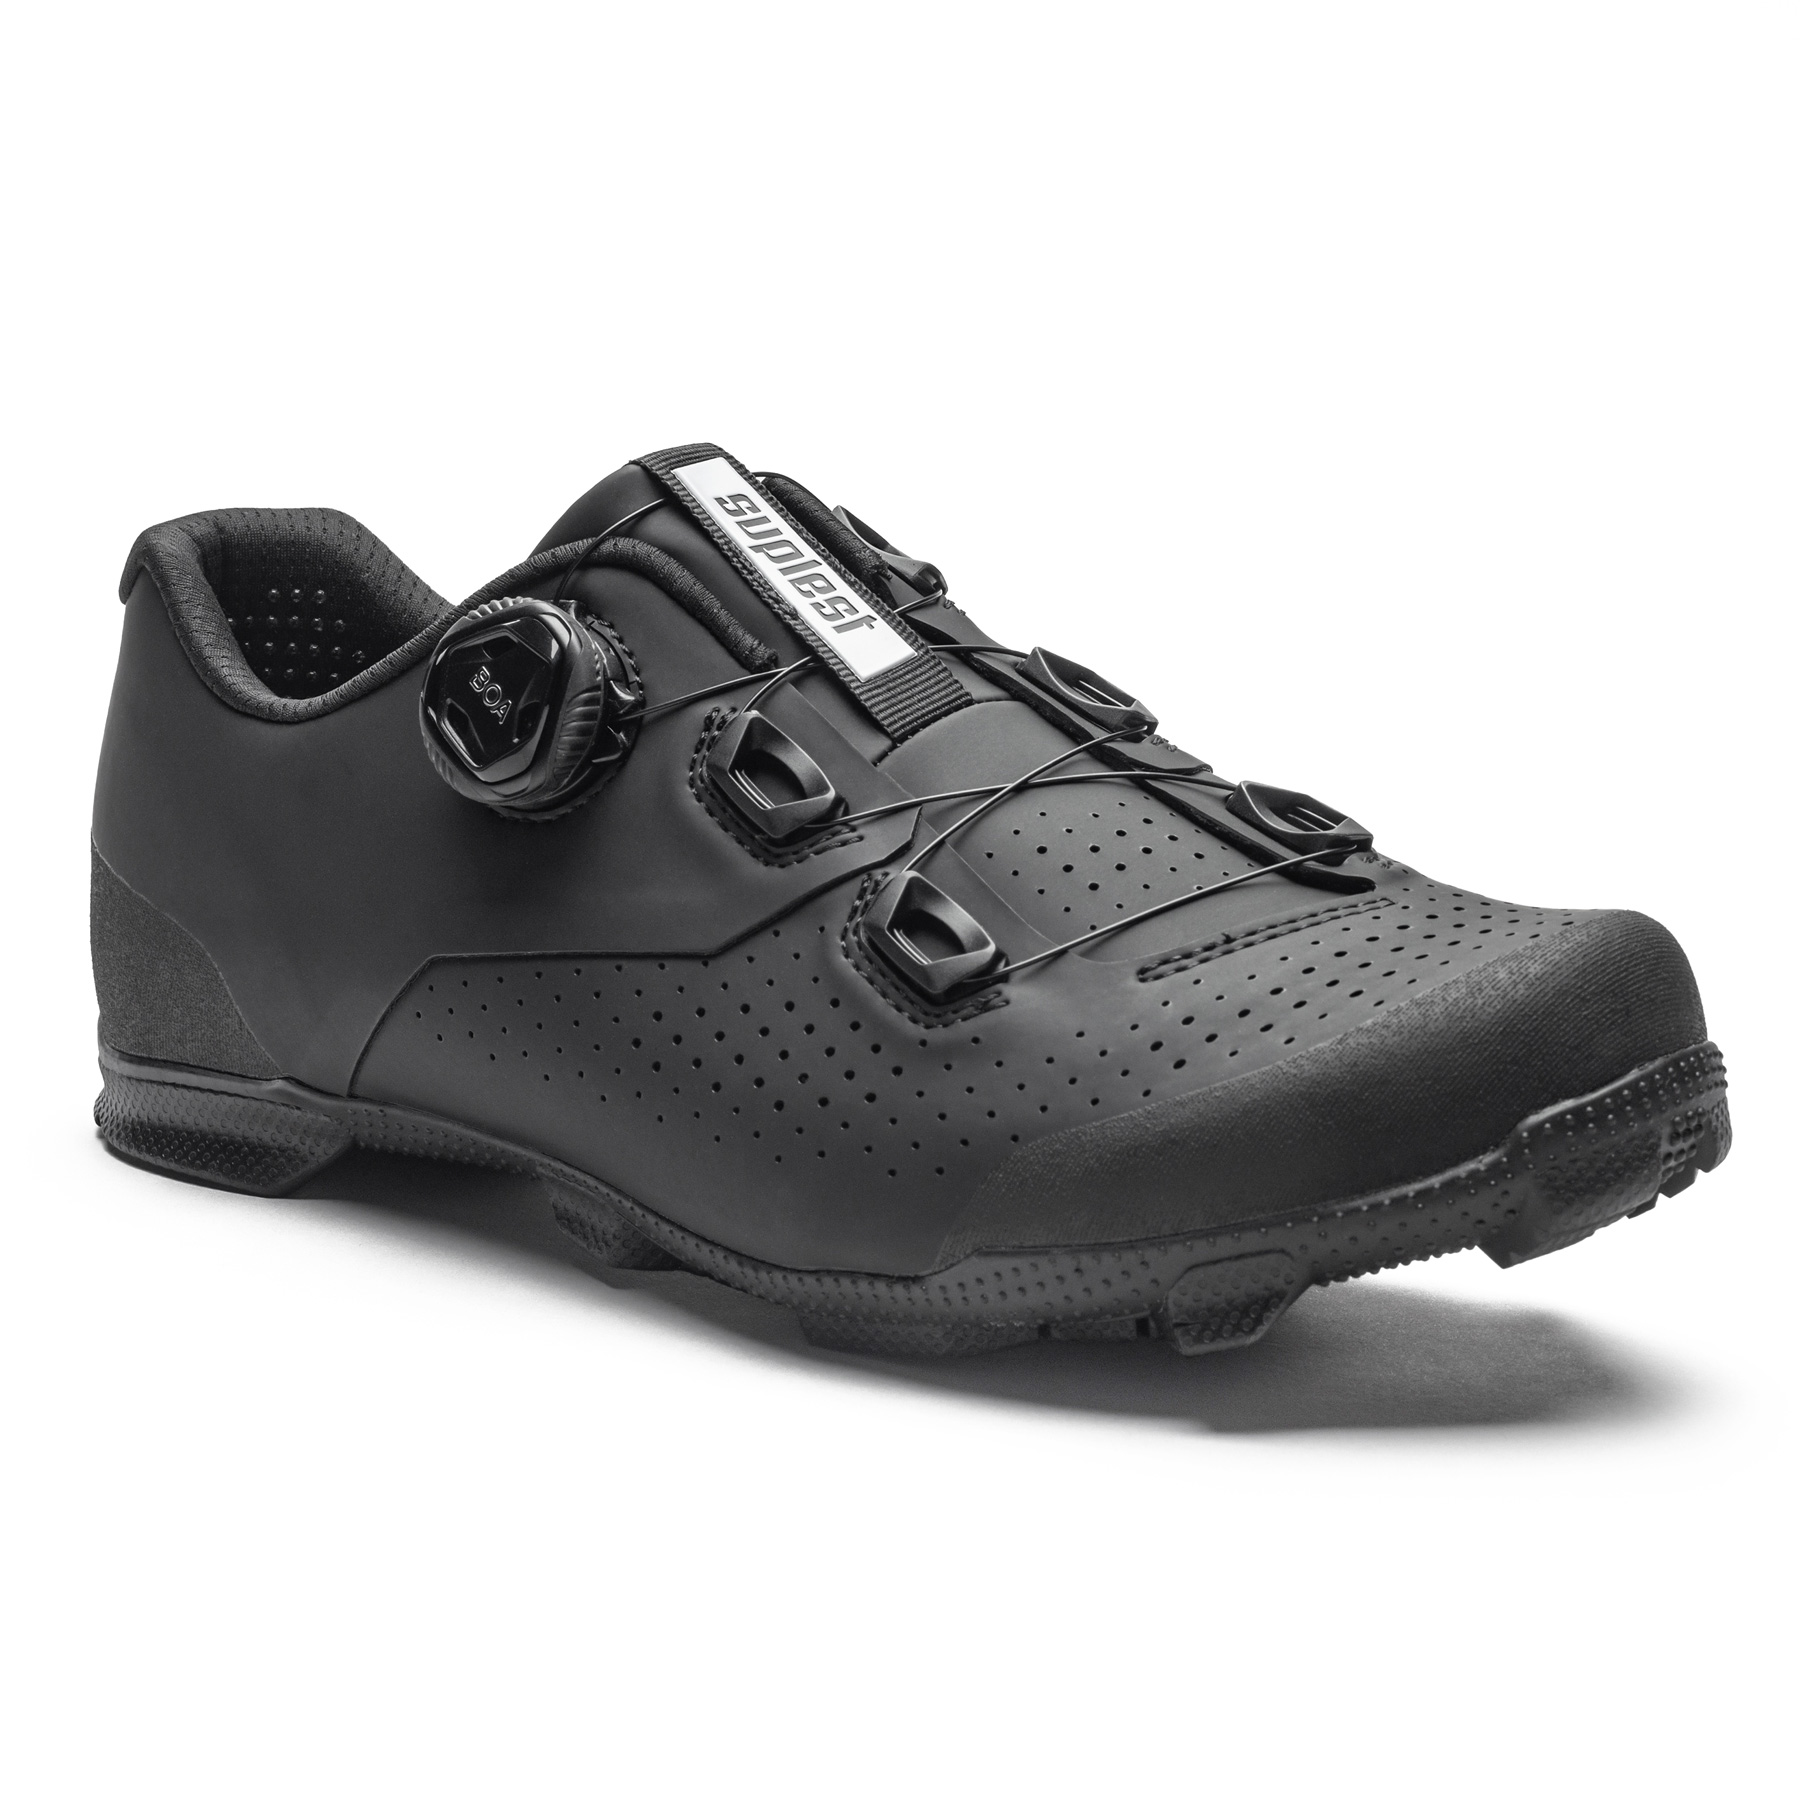 Produktbild von Suplest EDGE+ 2.0 Sport Mountain Series - BOA L6 MTB Schuhe - schwarz 02.048.